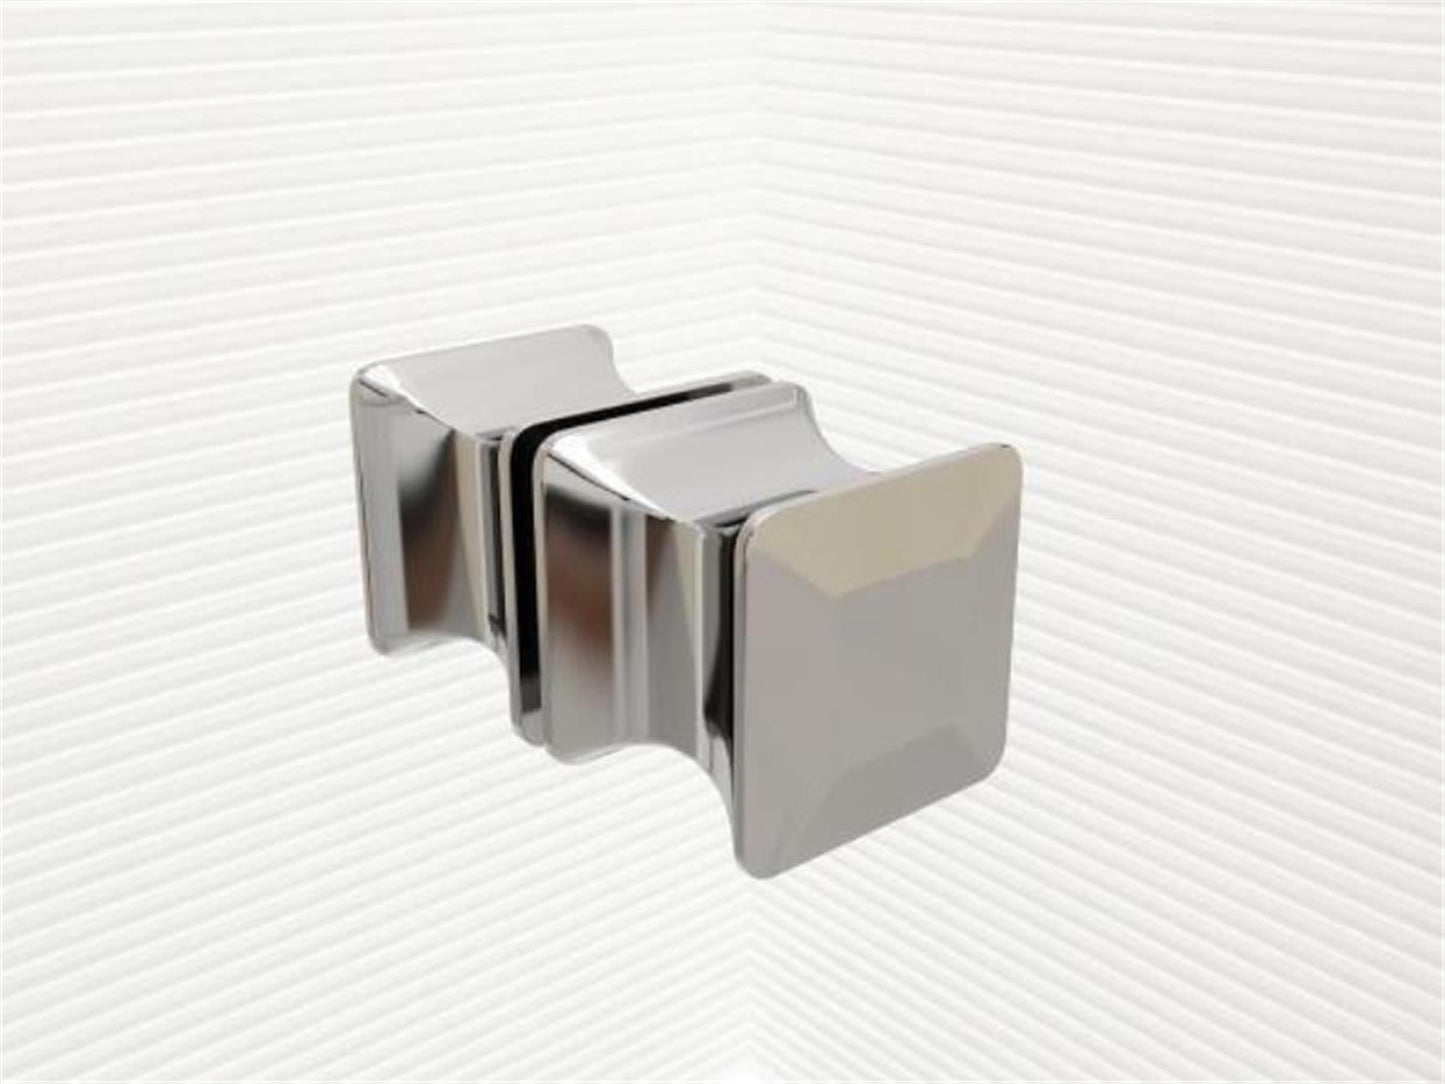 GlasHomeCenter - Cabine de douche en U "Asuka" (90x75x180cm) - 8mm - cabine de douche d'angle - cloison de douche - sans bac à douche